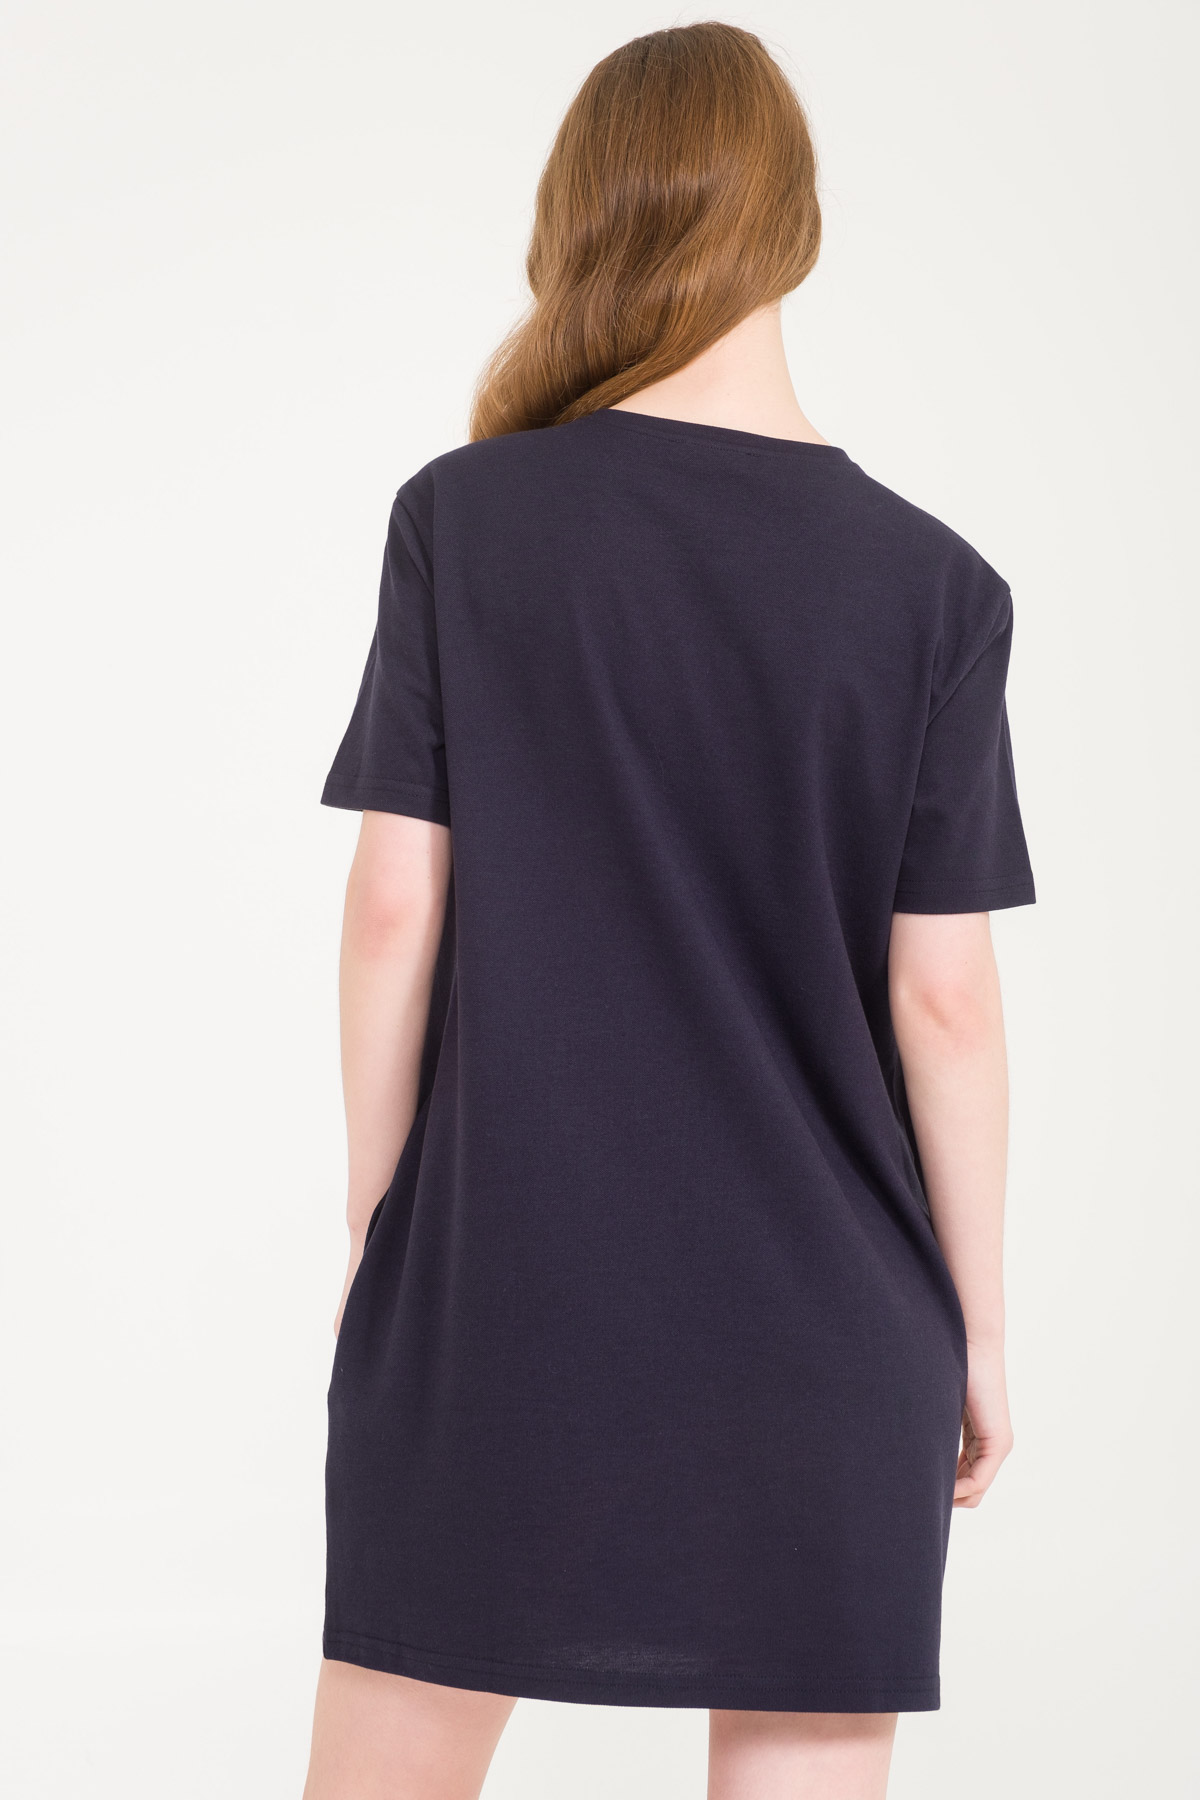 Kadın Lacoste Kısa Kollu T-shirt Elbise